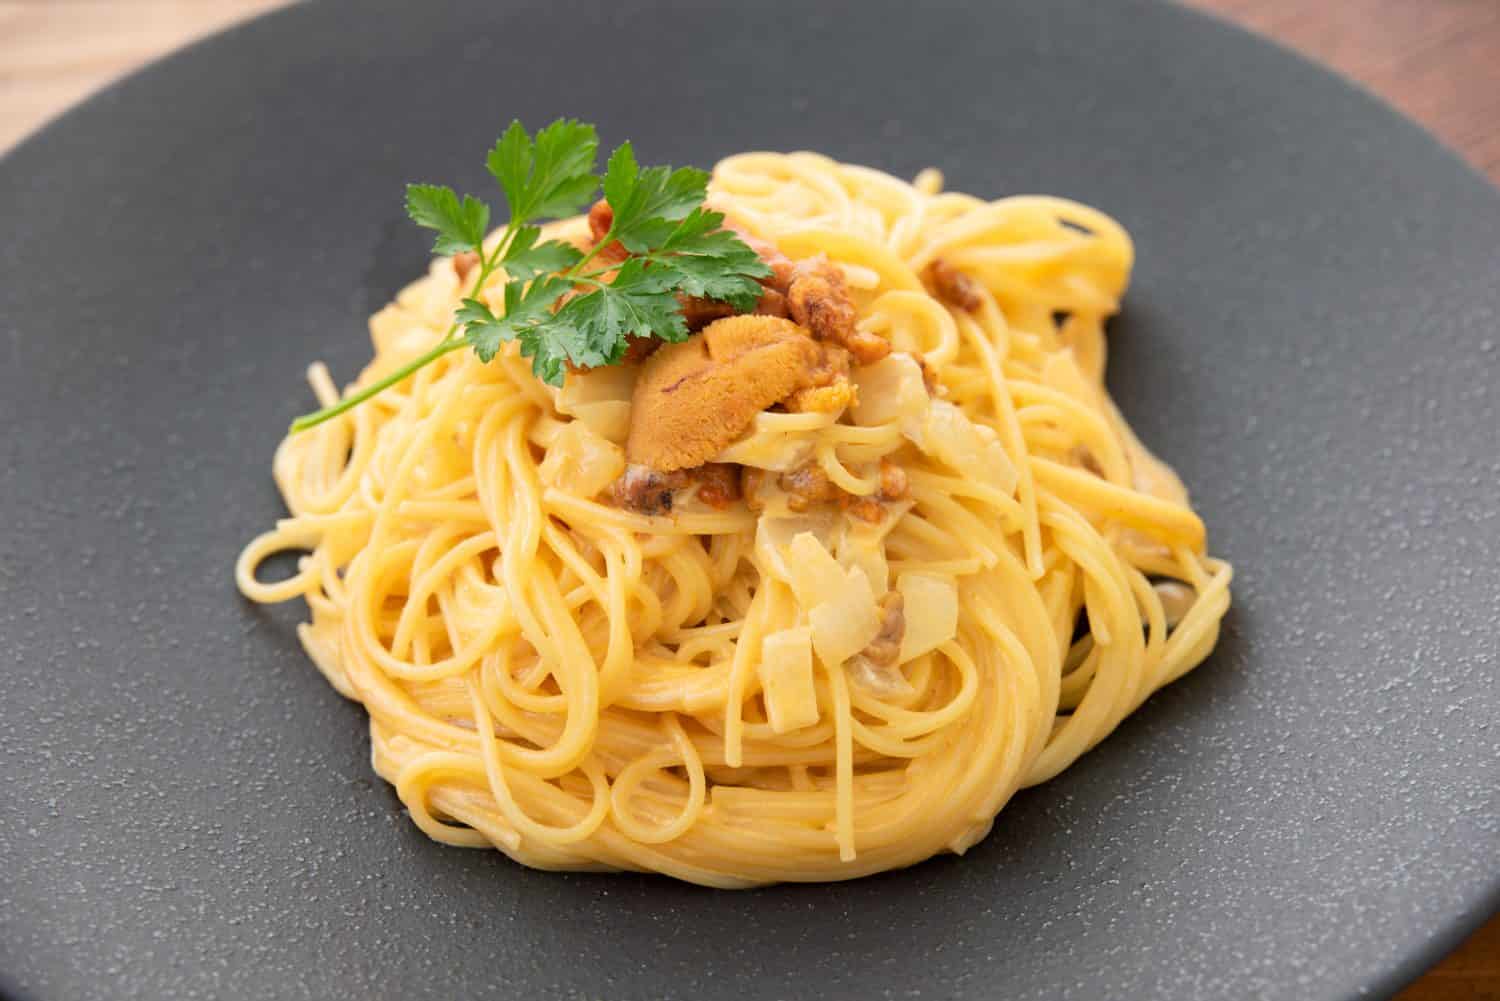 Cream pasta with sea urchin